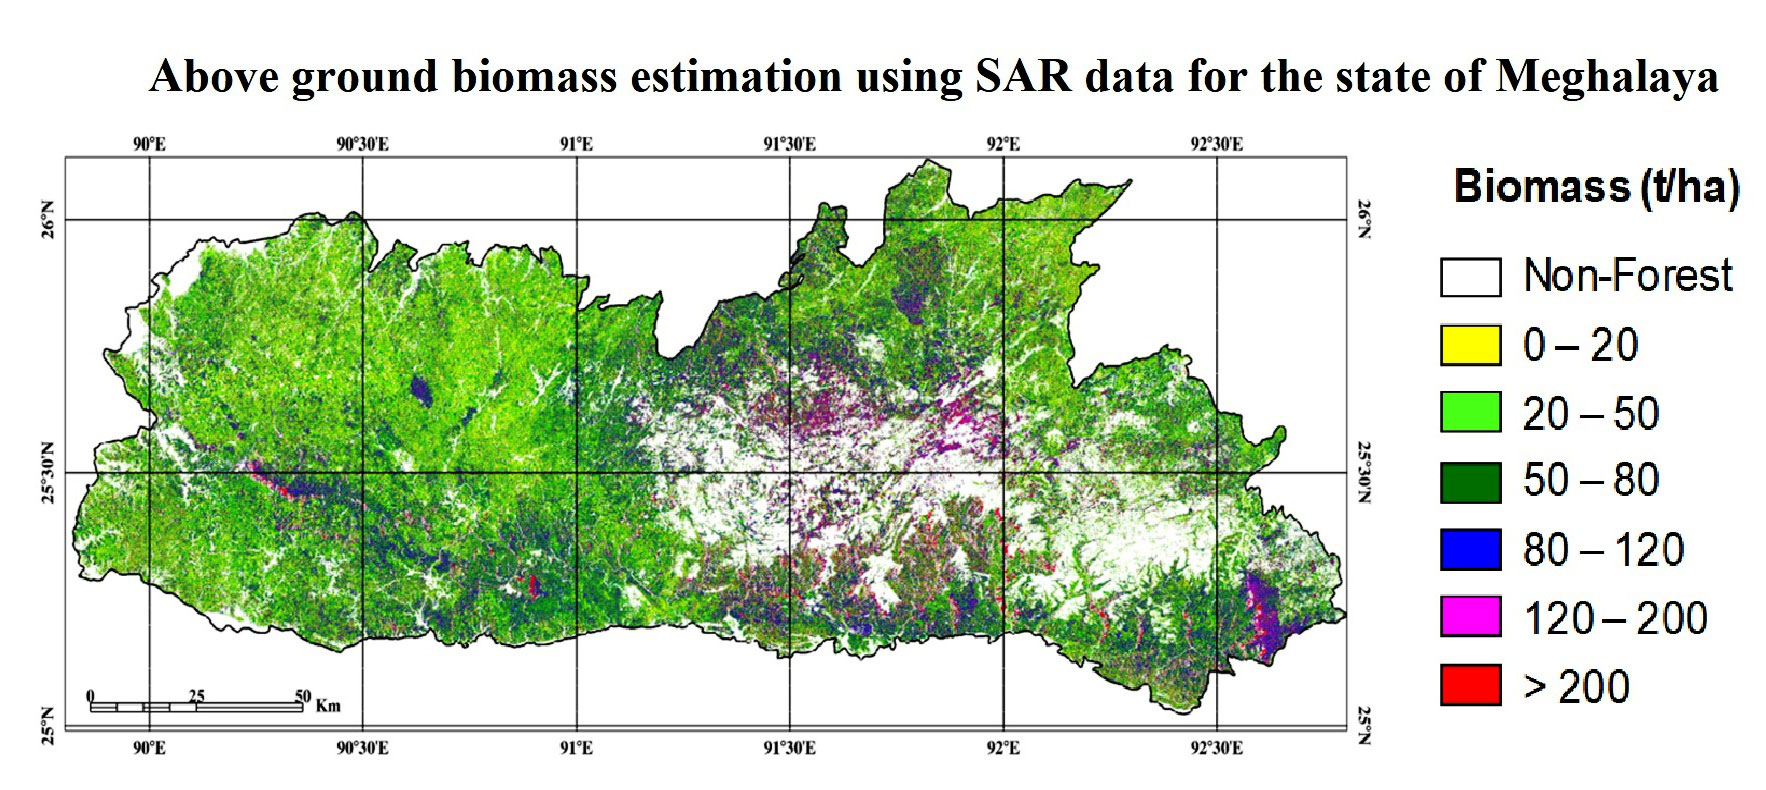 Forest biomass assessment using SAR